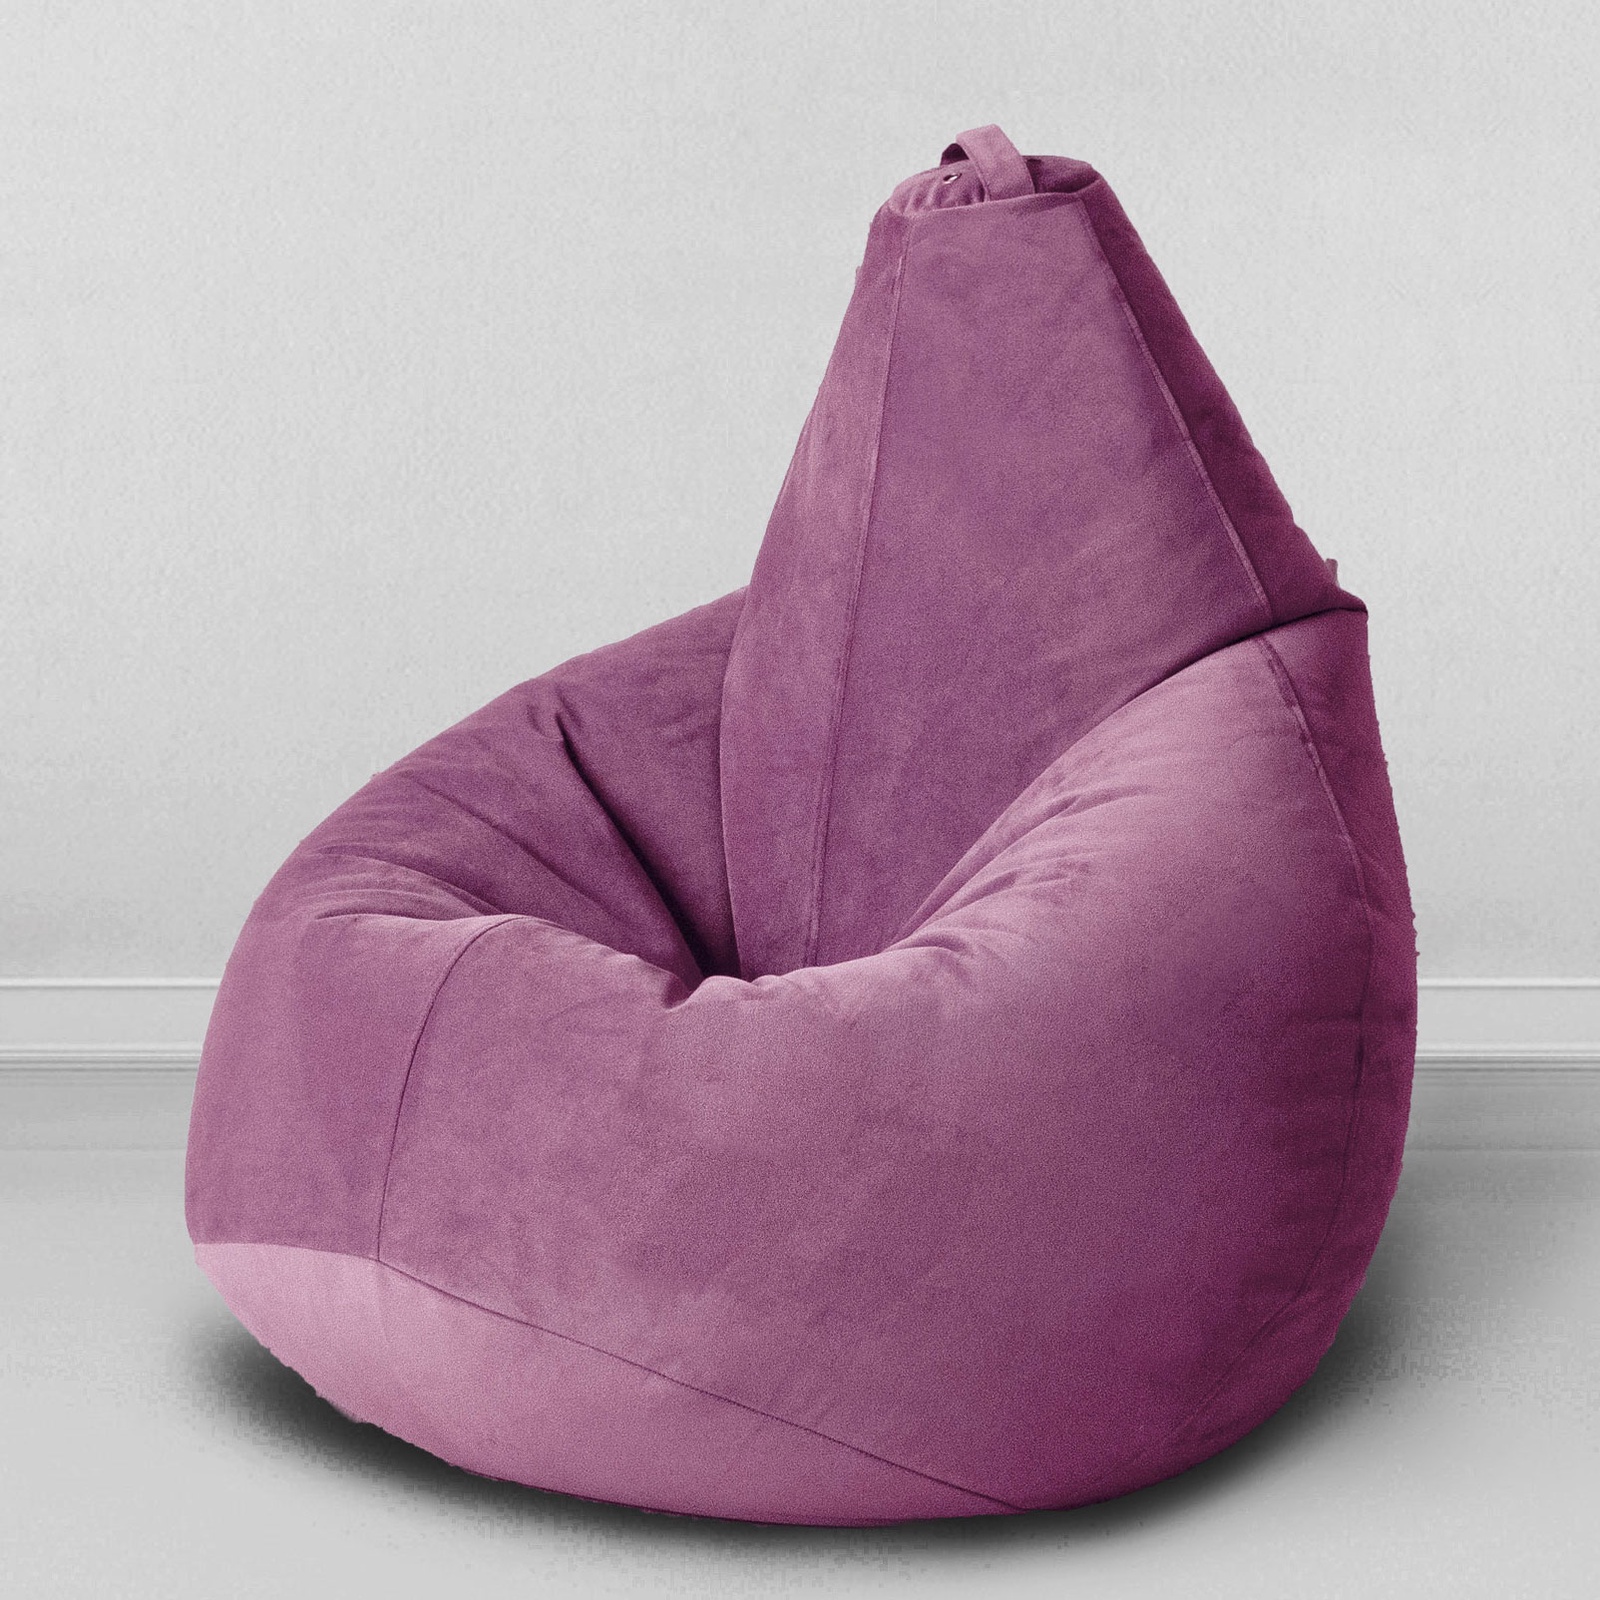 фото Кресло-мешок для сидения "груша", разм. Комфорт, мебельная ткань Mypuff